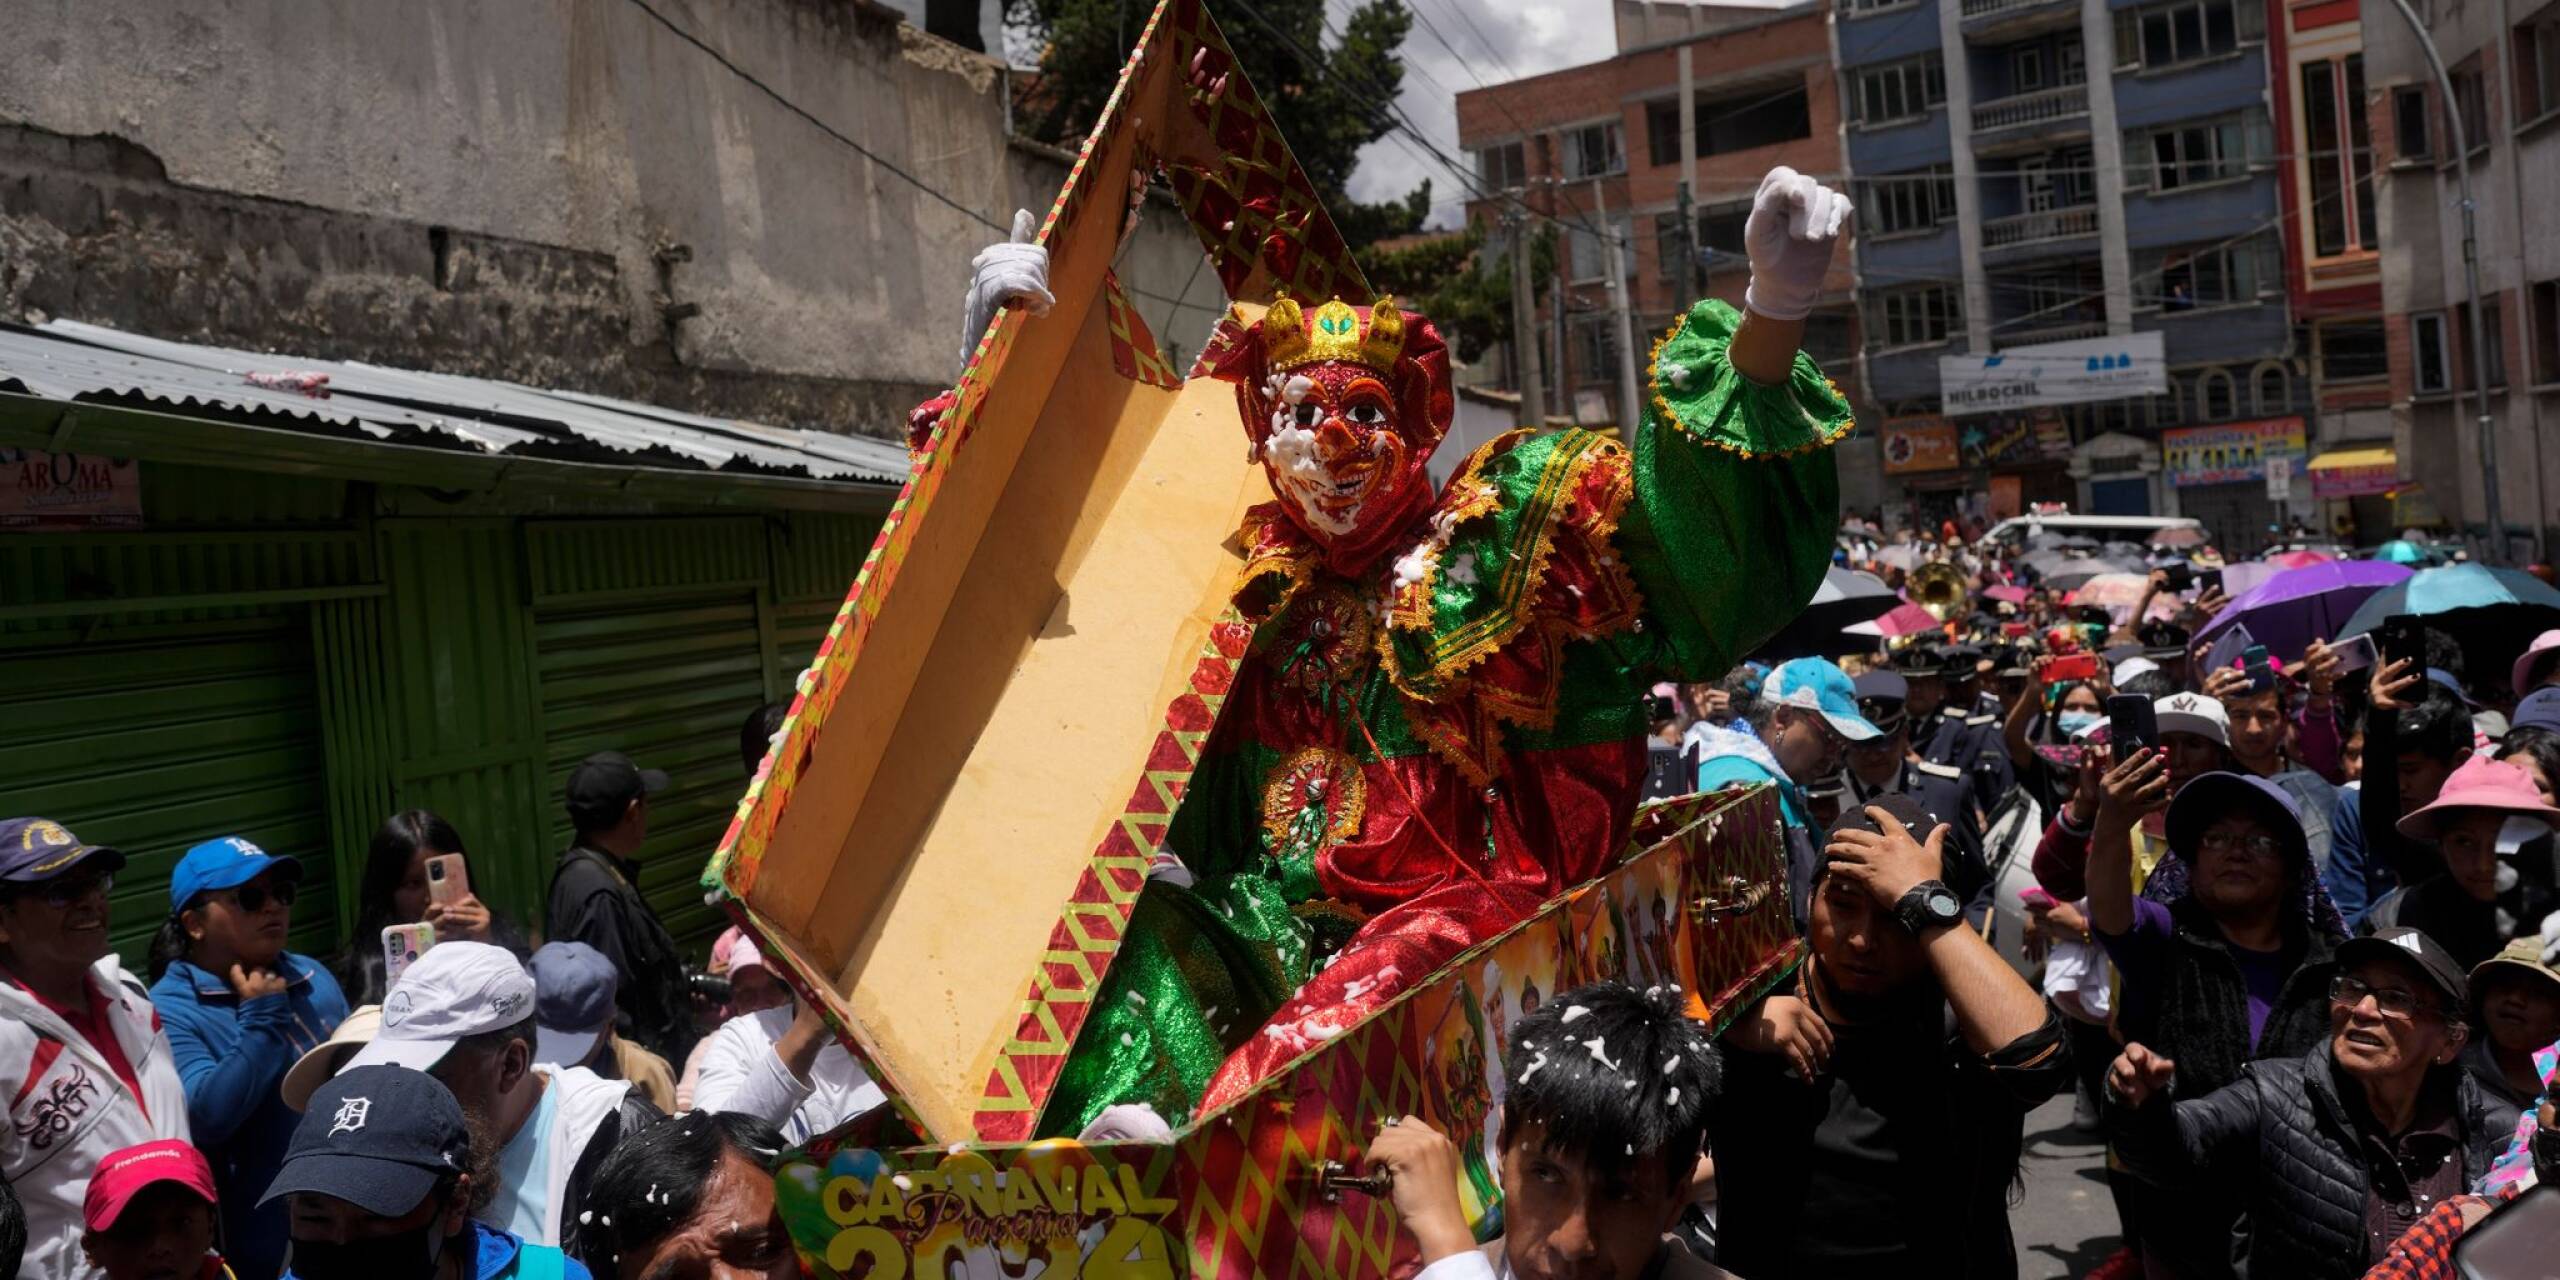 Mit der symbolischen Ausgrabung von Pepino, einer der drei Hauptfiguren des Karnevals, die für Freude steht, eröffnen die Menschen in Bolivien die Karnevalssaison.